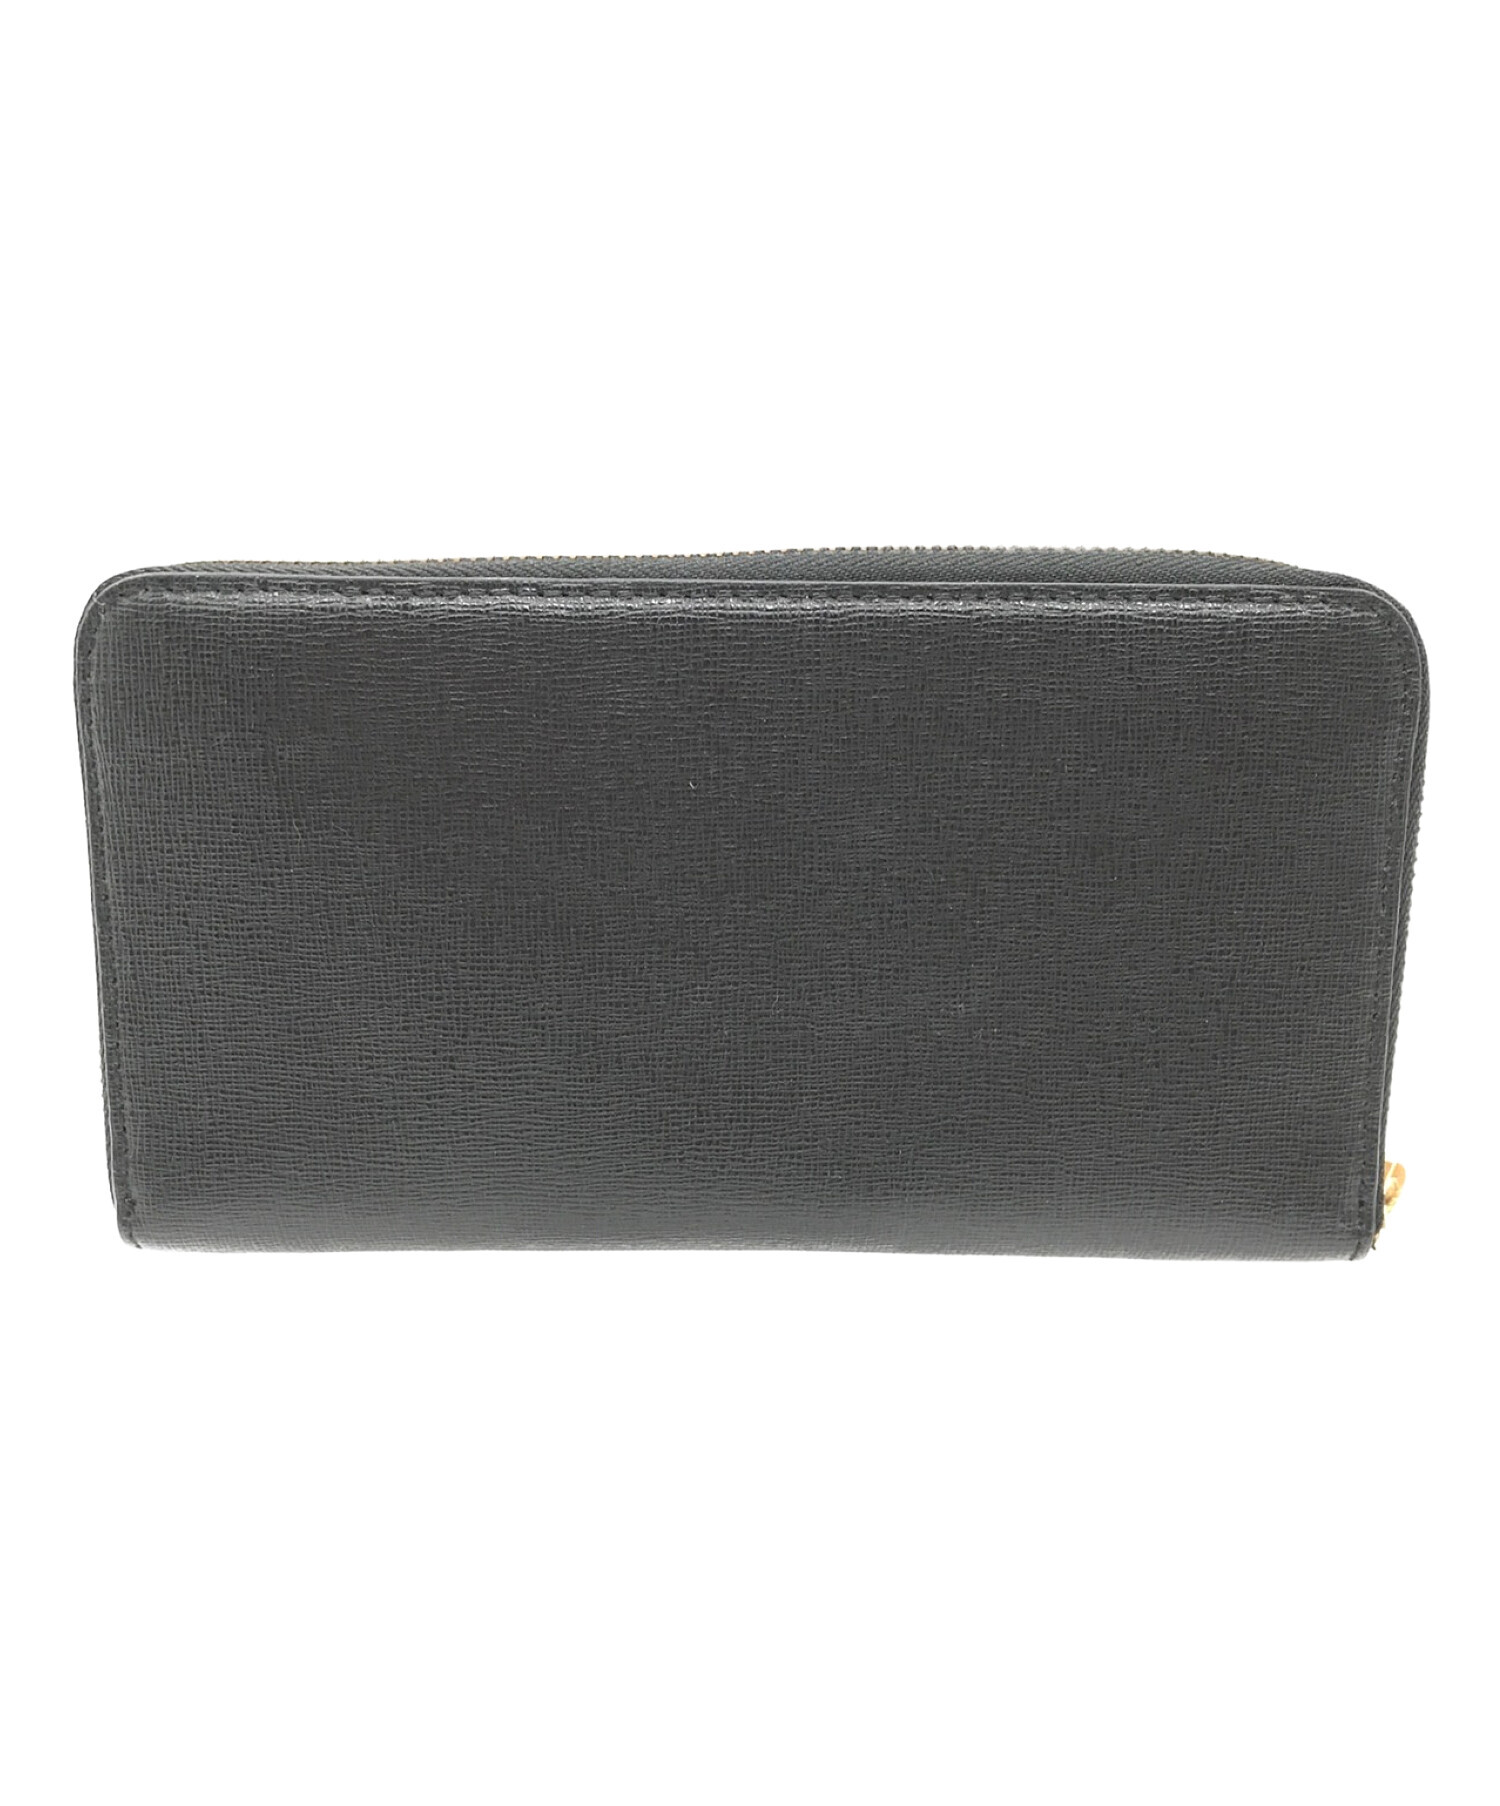 FURLA (フルラ) 長財布 ブラック×ピンク サイズ:実寸サイズにてご確認ください。